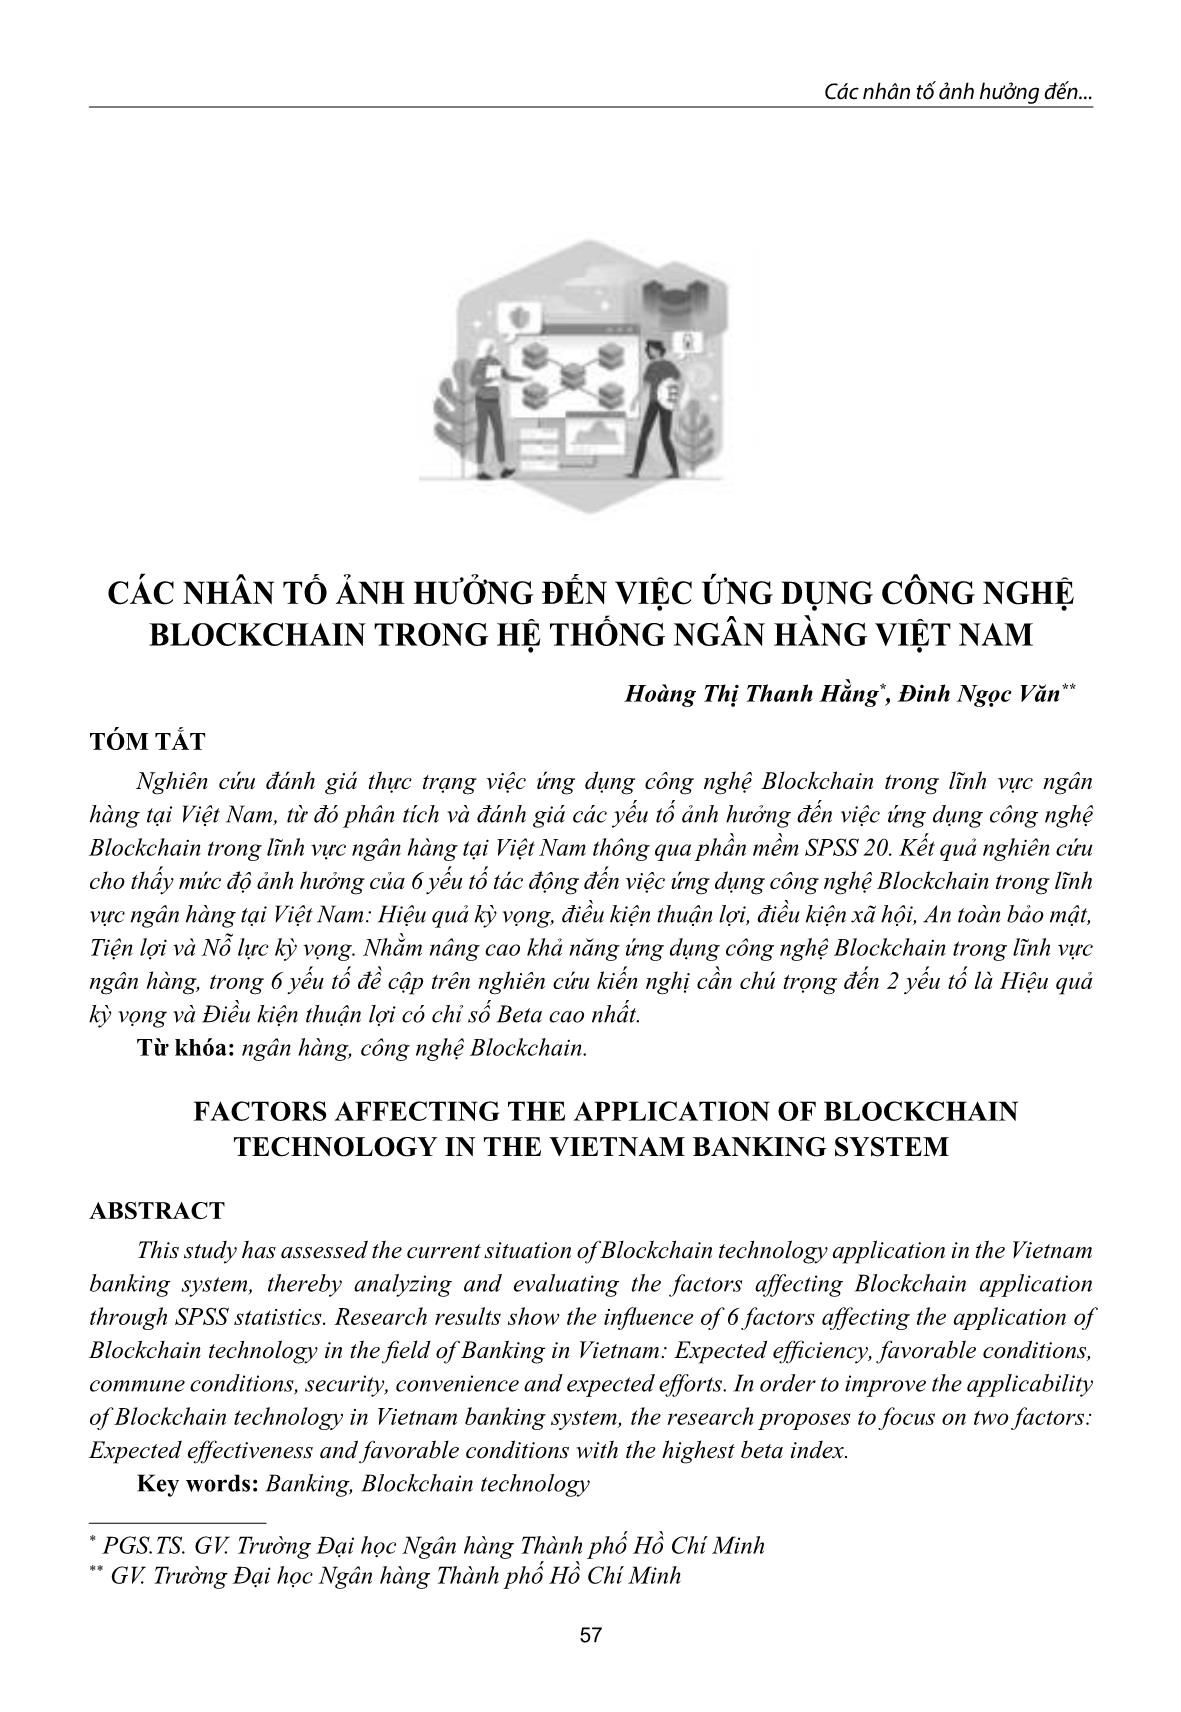 Các nhân tố ảnh hưởng đến việc ứng dụng công nghệ blockchain trong hệ thống ngân hàng Việt Nam trang 1